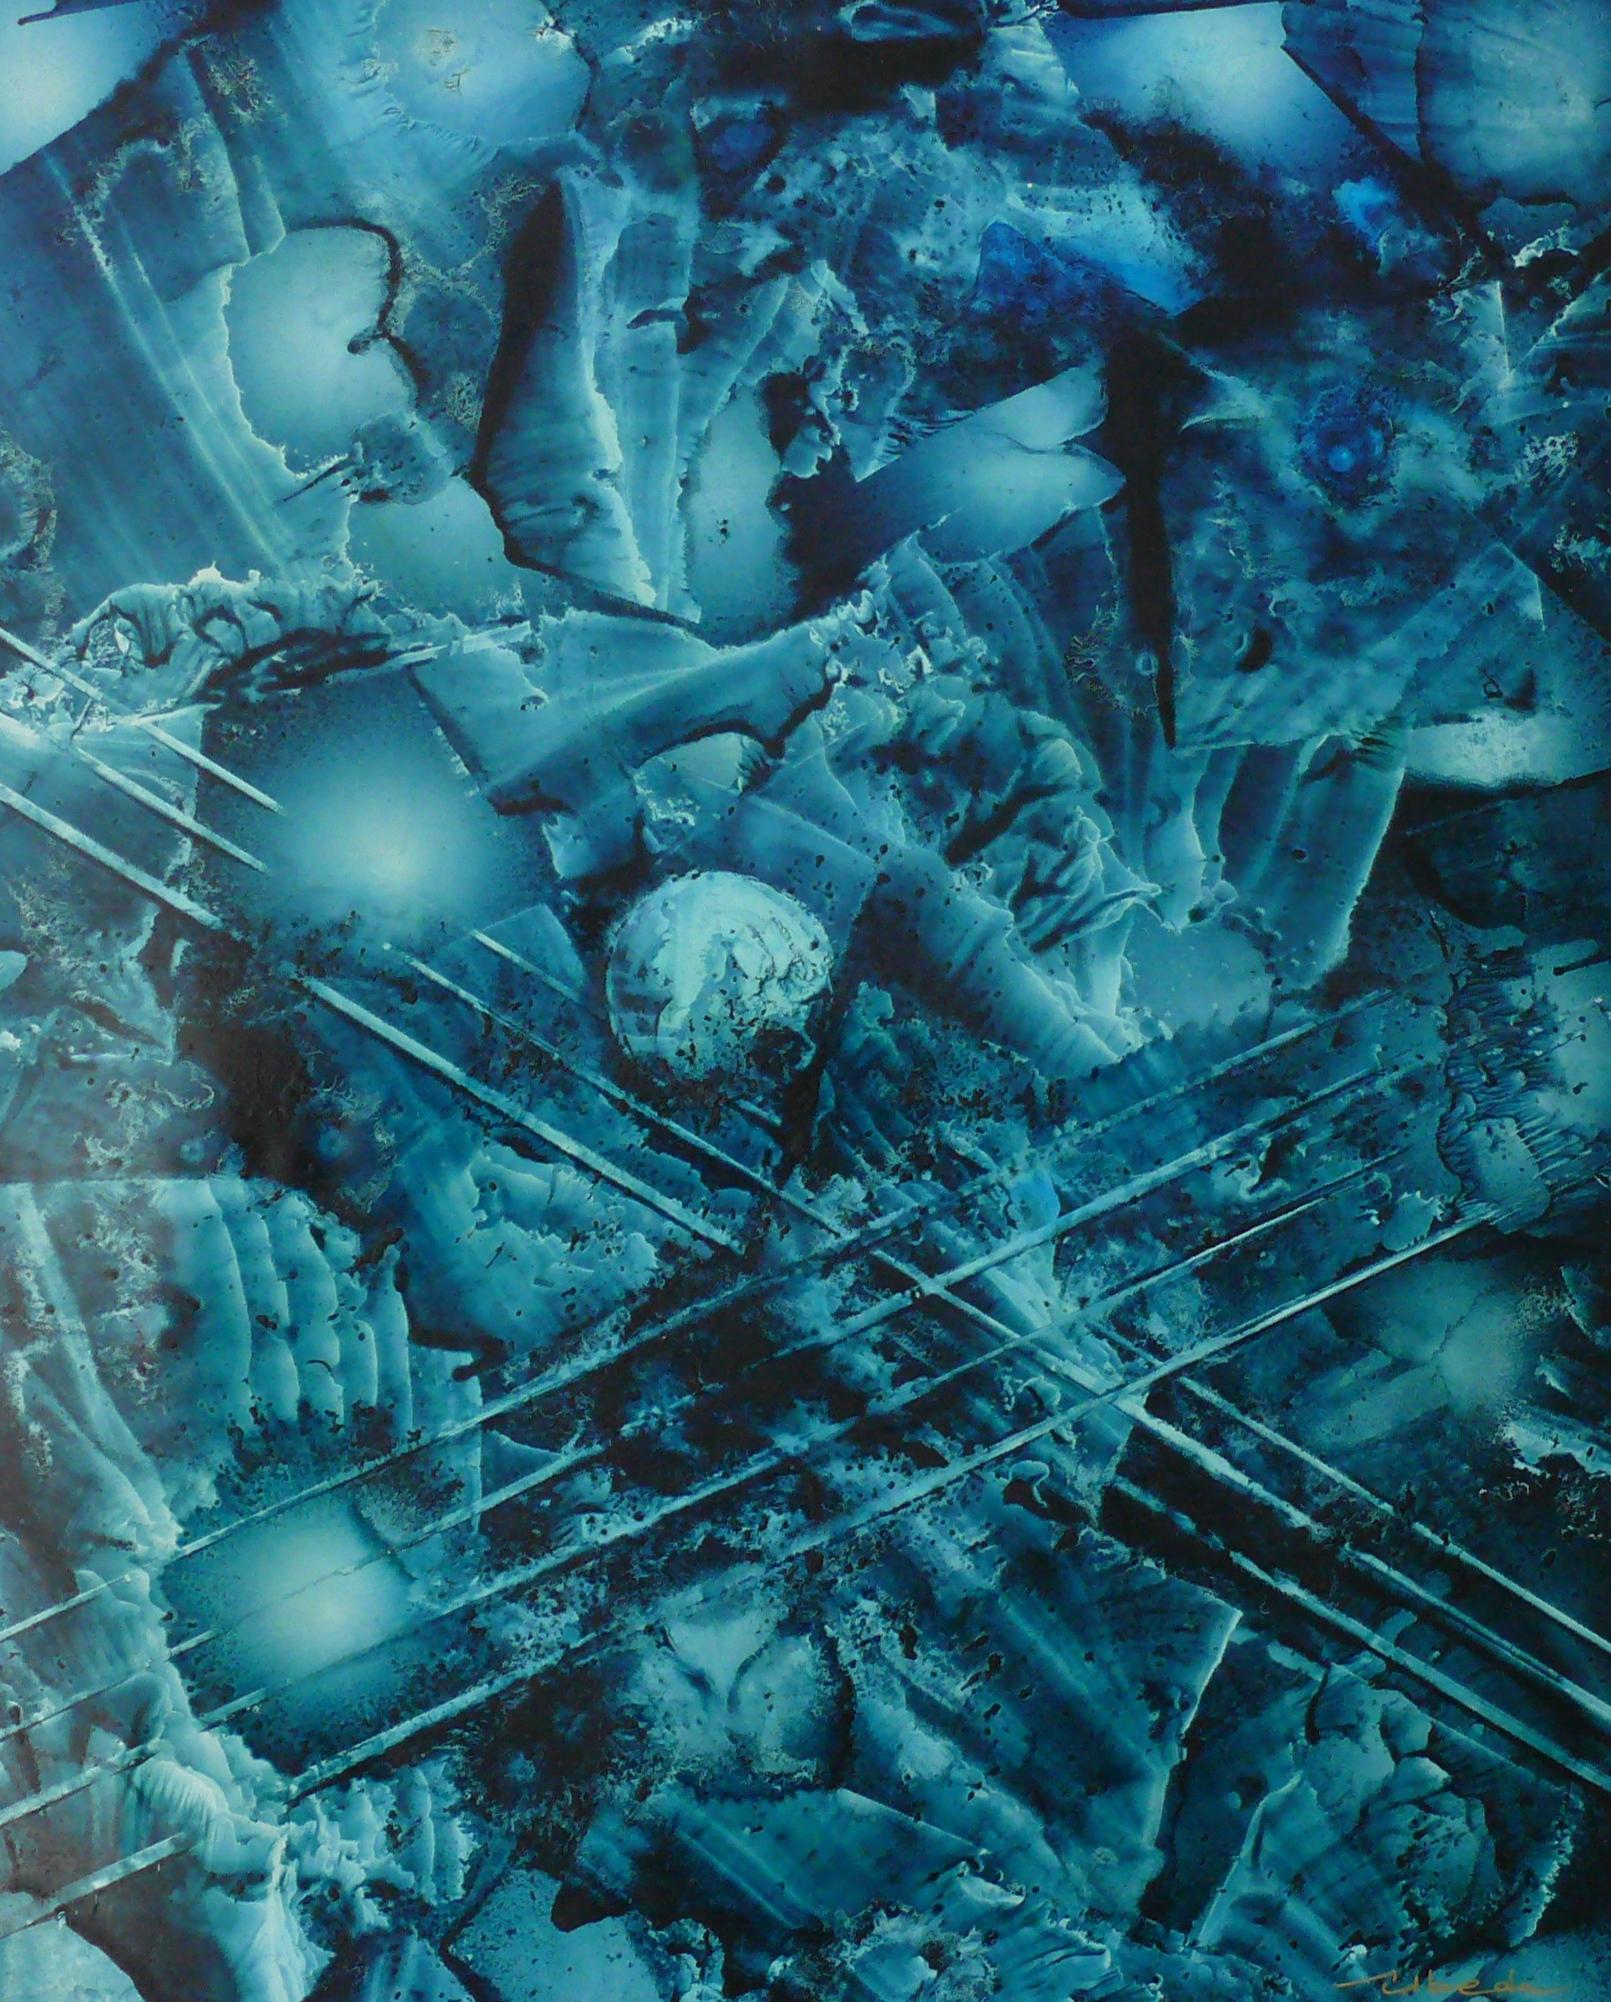 Ángel Luis Úbeda Figurative Painting - Under The Sea Series Nº 12. Úbeda. Oil fantasy blue underwater landscape.